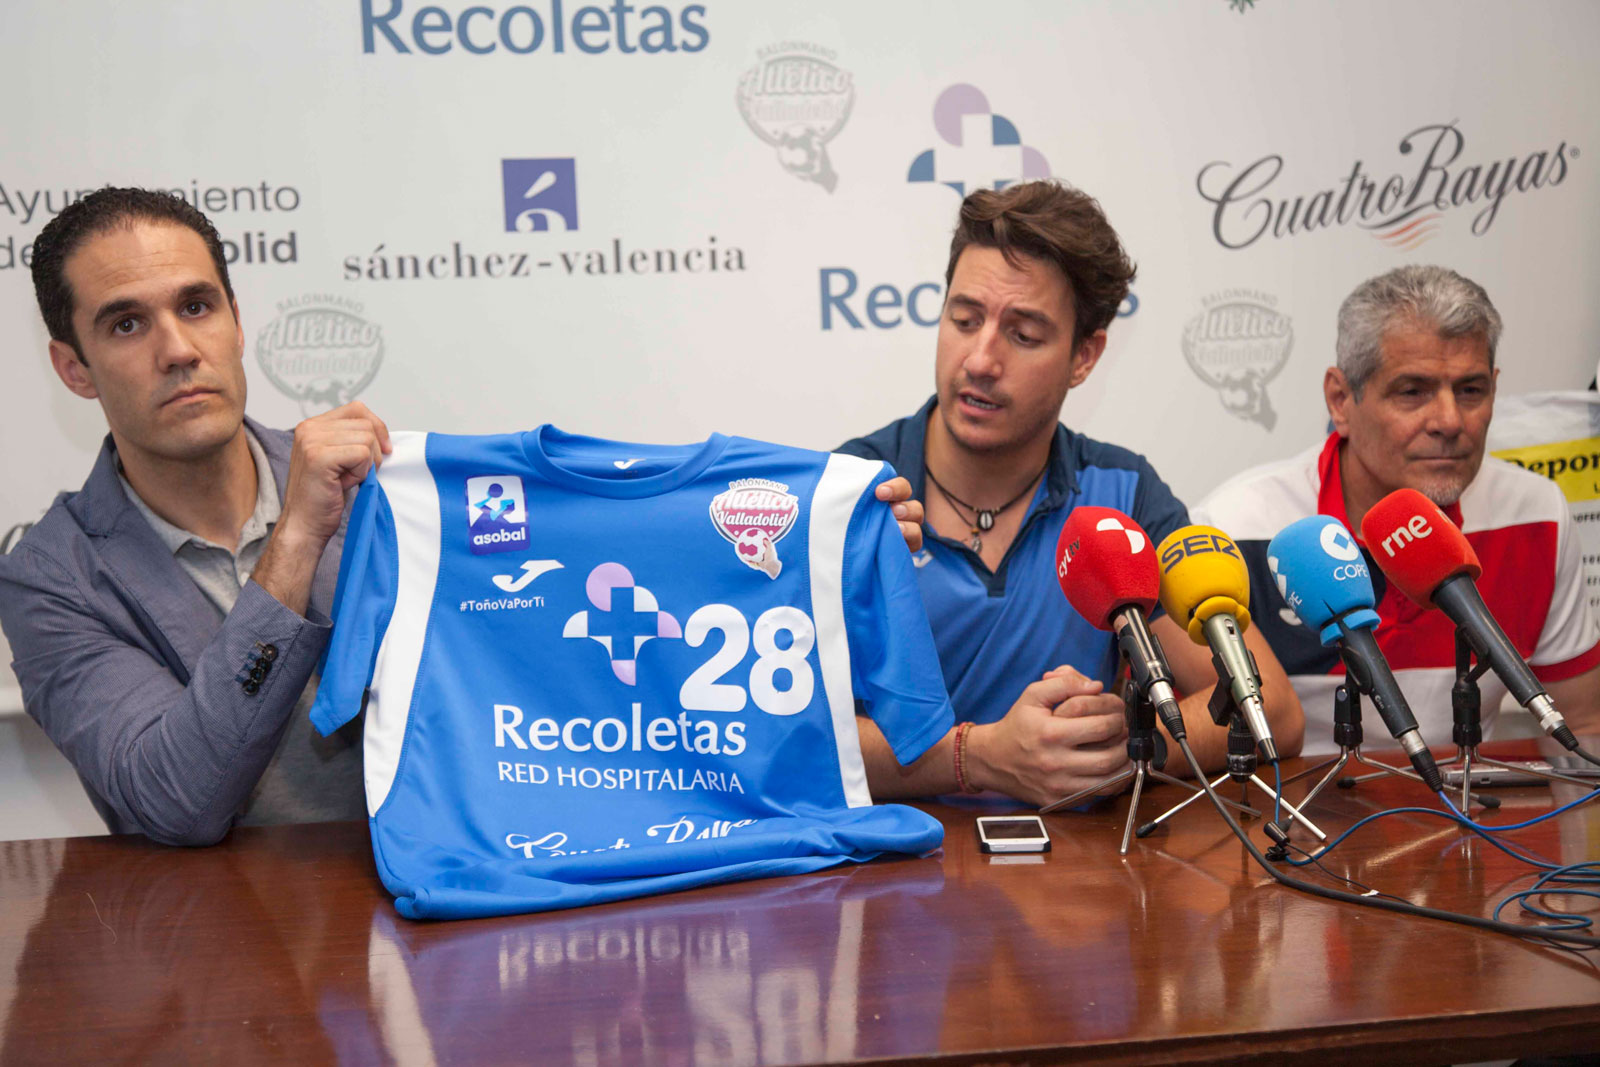 El Recoletas Atlético Valladolid presenta sus nuevas camisetas junto a Joma y Deportes Chema | Galería 4 / 8